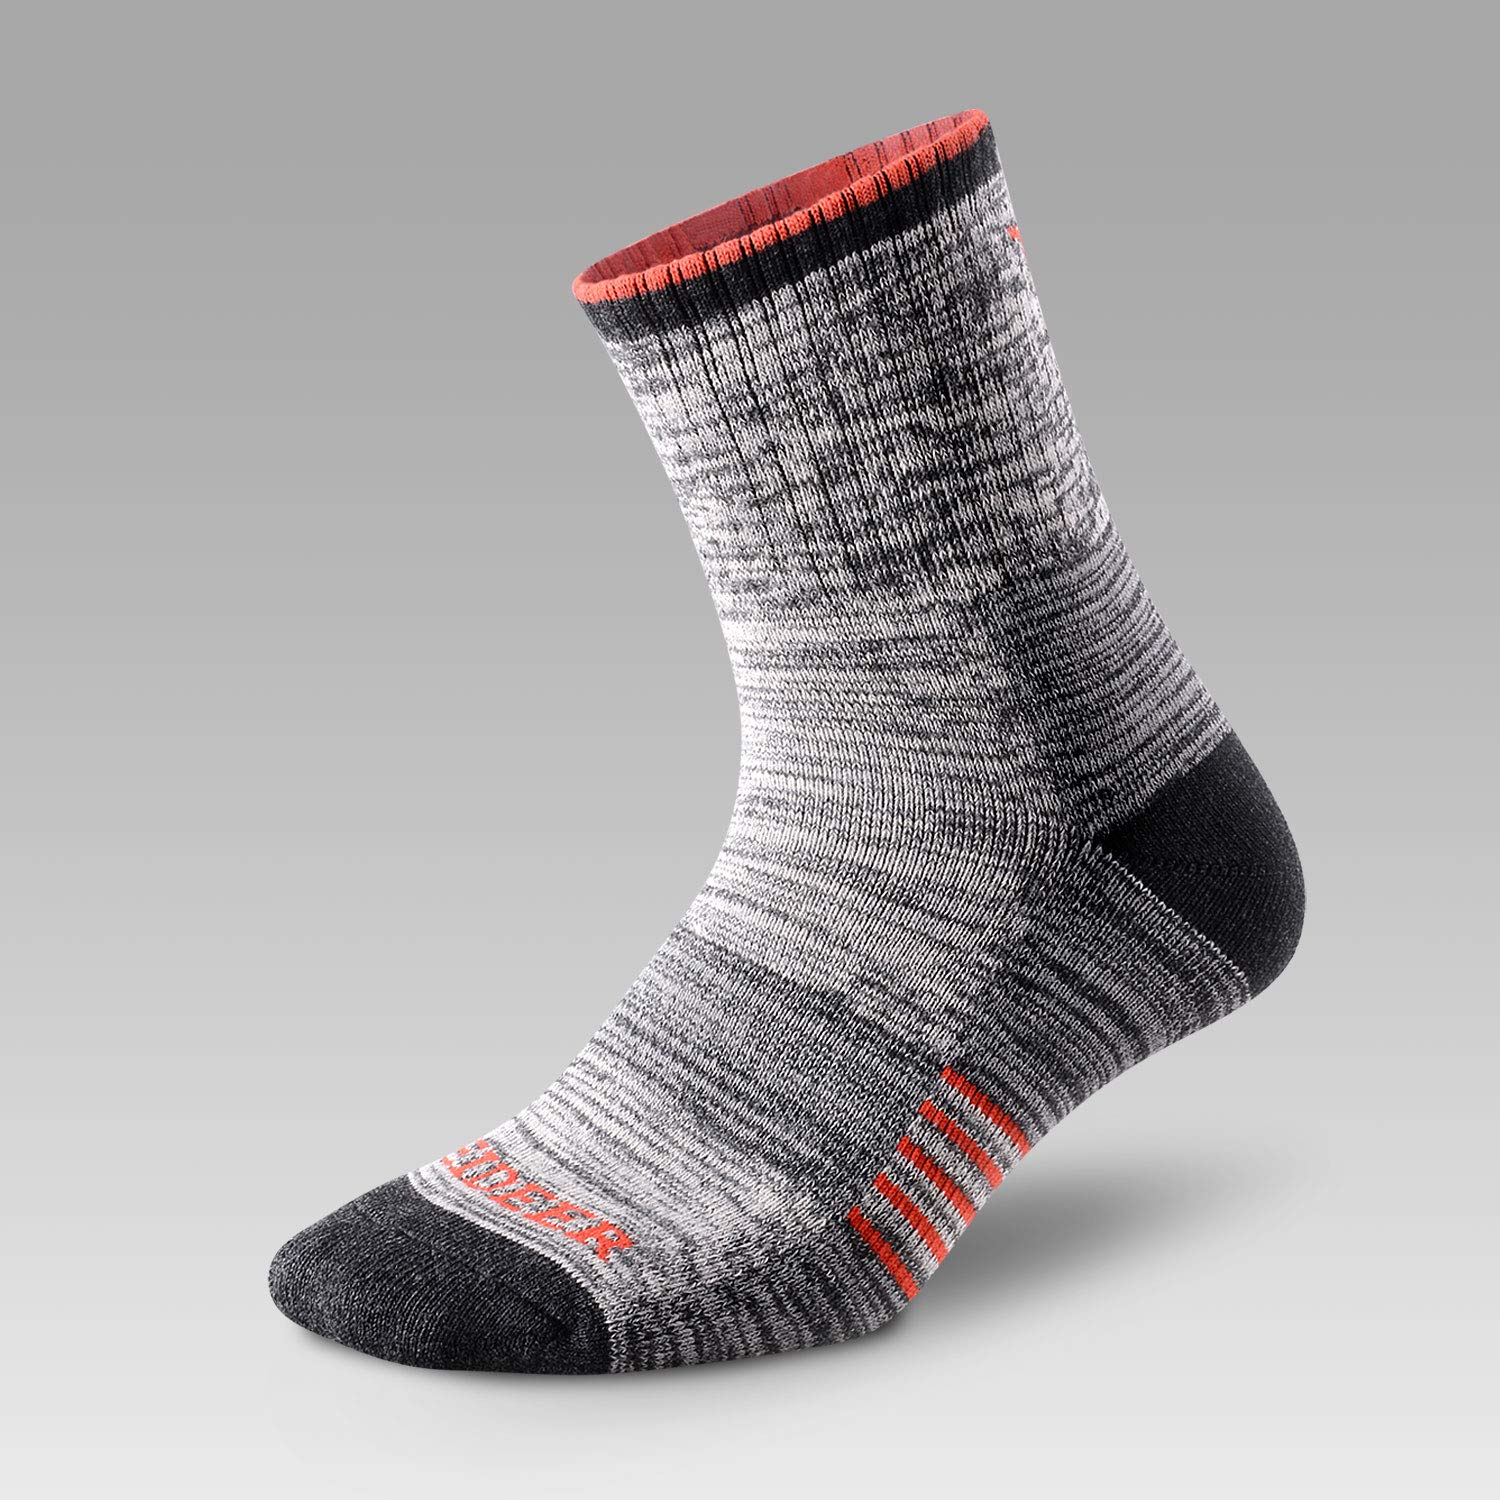 FEIDEER Men's Hiking Walking Socks, Multi-pack Wicking Cushioned Outdoor Recreation Crew Socks